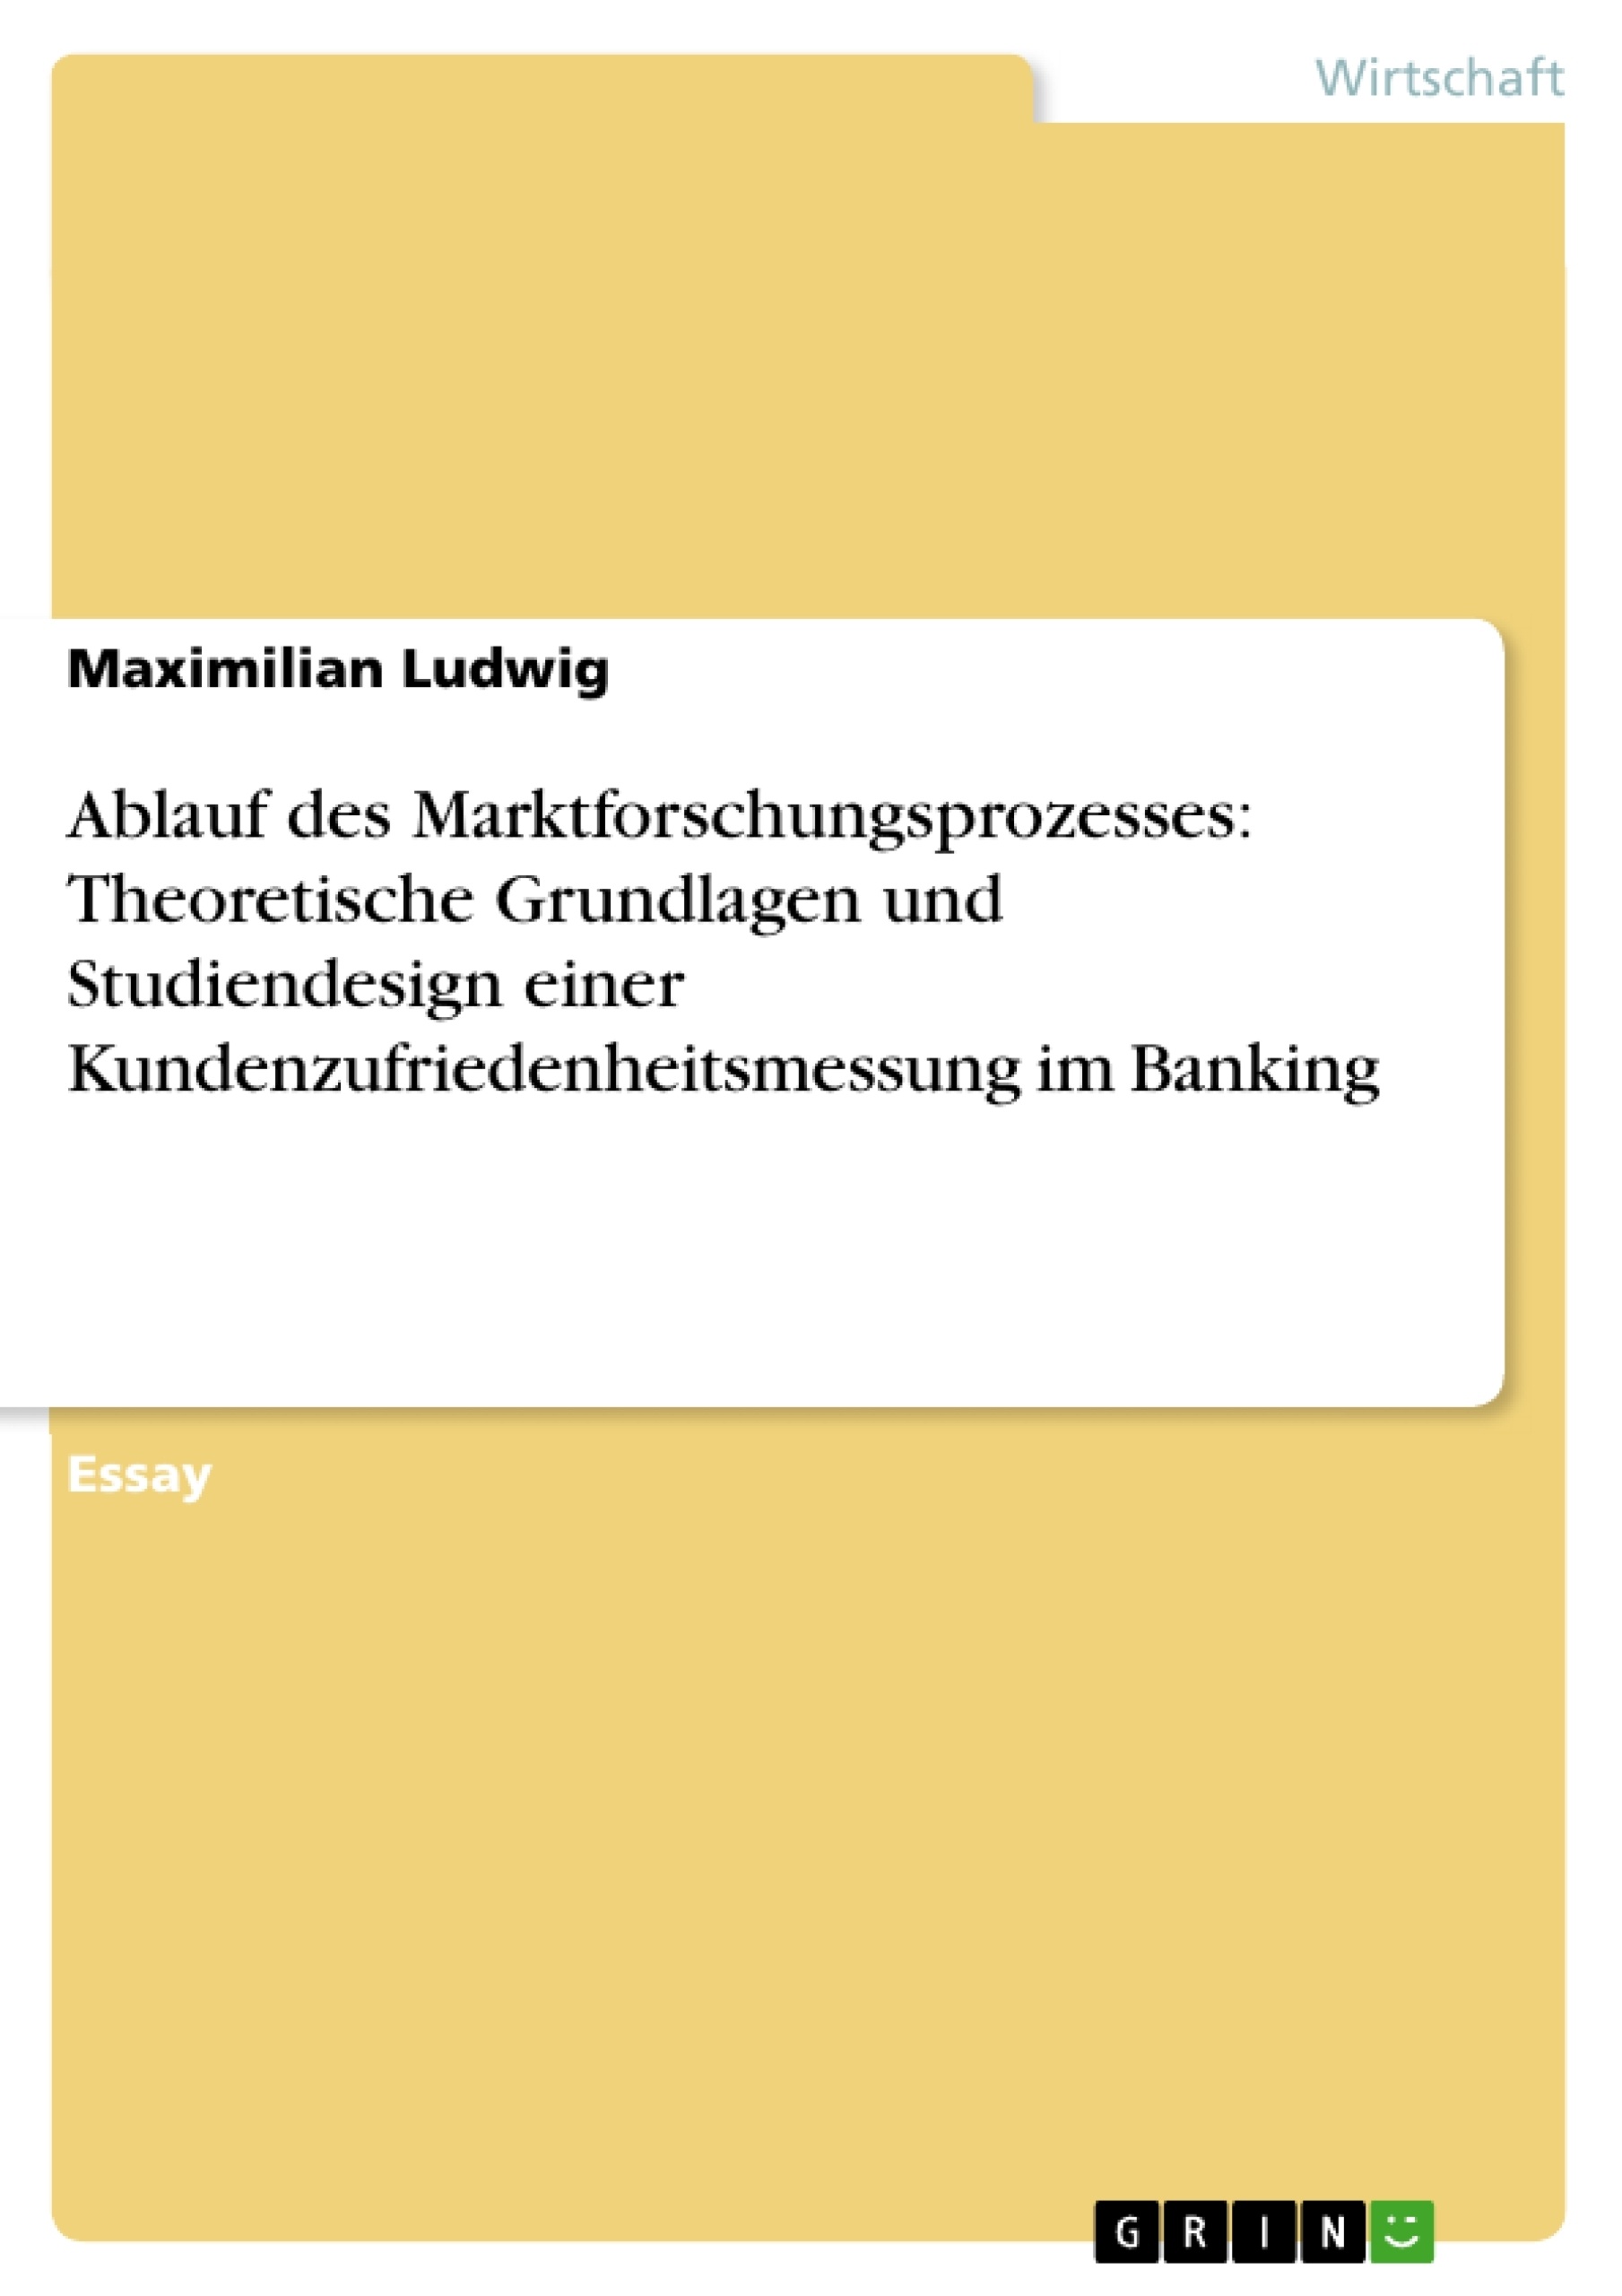 Titel: Ablauf des Marktforschungsprozesses: Theoretische Grundlagen und Studiendesign einer Kundenzufriedenheitsmessung im Banking